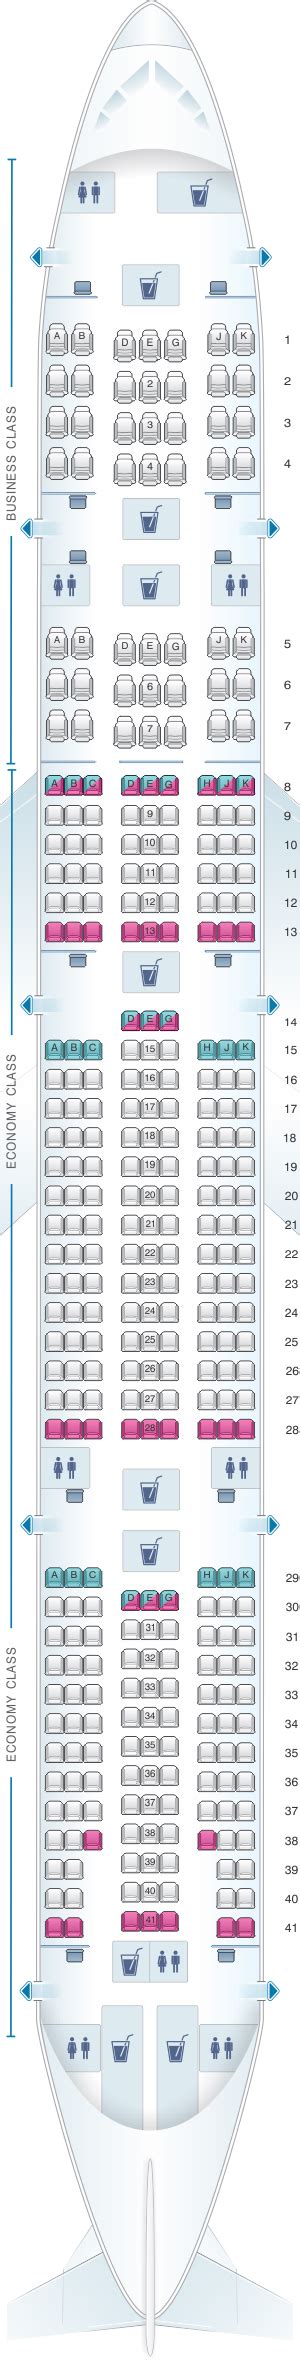 Seating Plan For Boeing 777 300er Jet